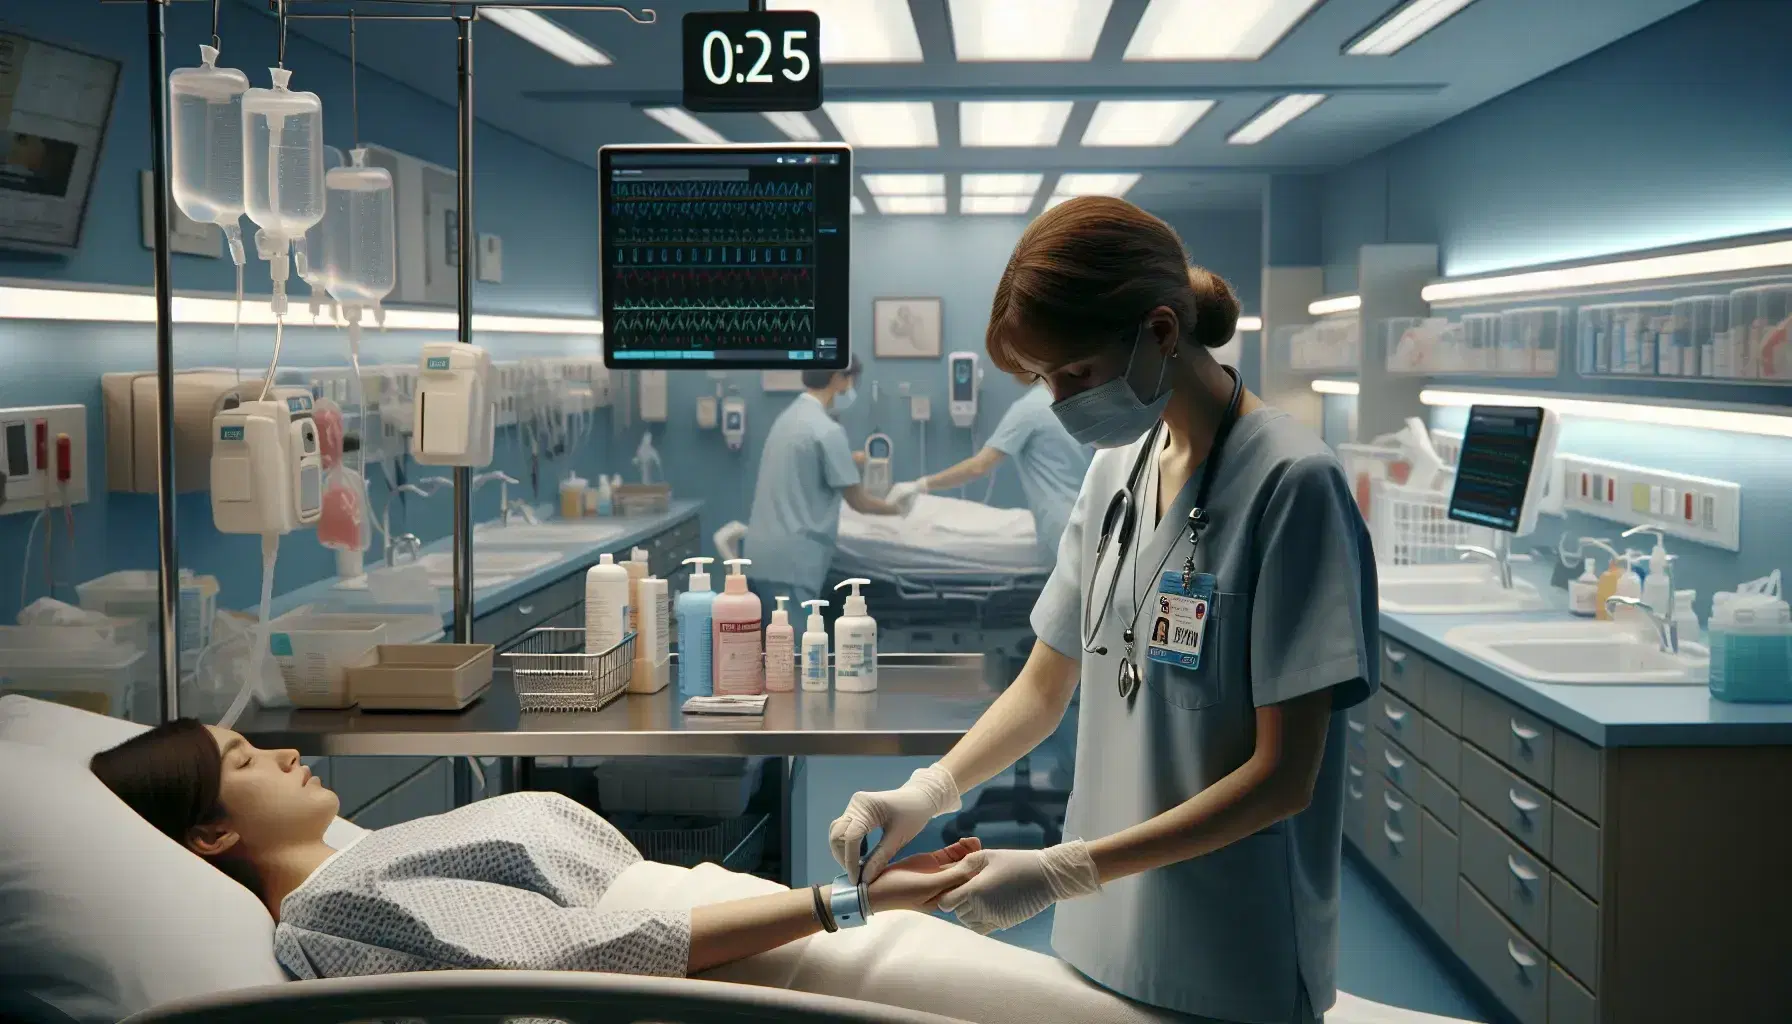 Enfermera aplicando pulsera de identificación a paciente en cama de hospital, con estación de enfermería y suministros médicos al fondo.